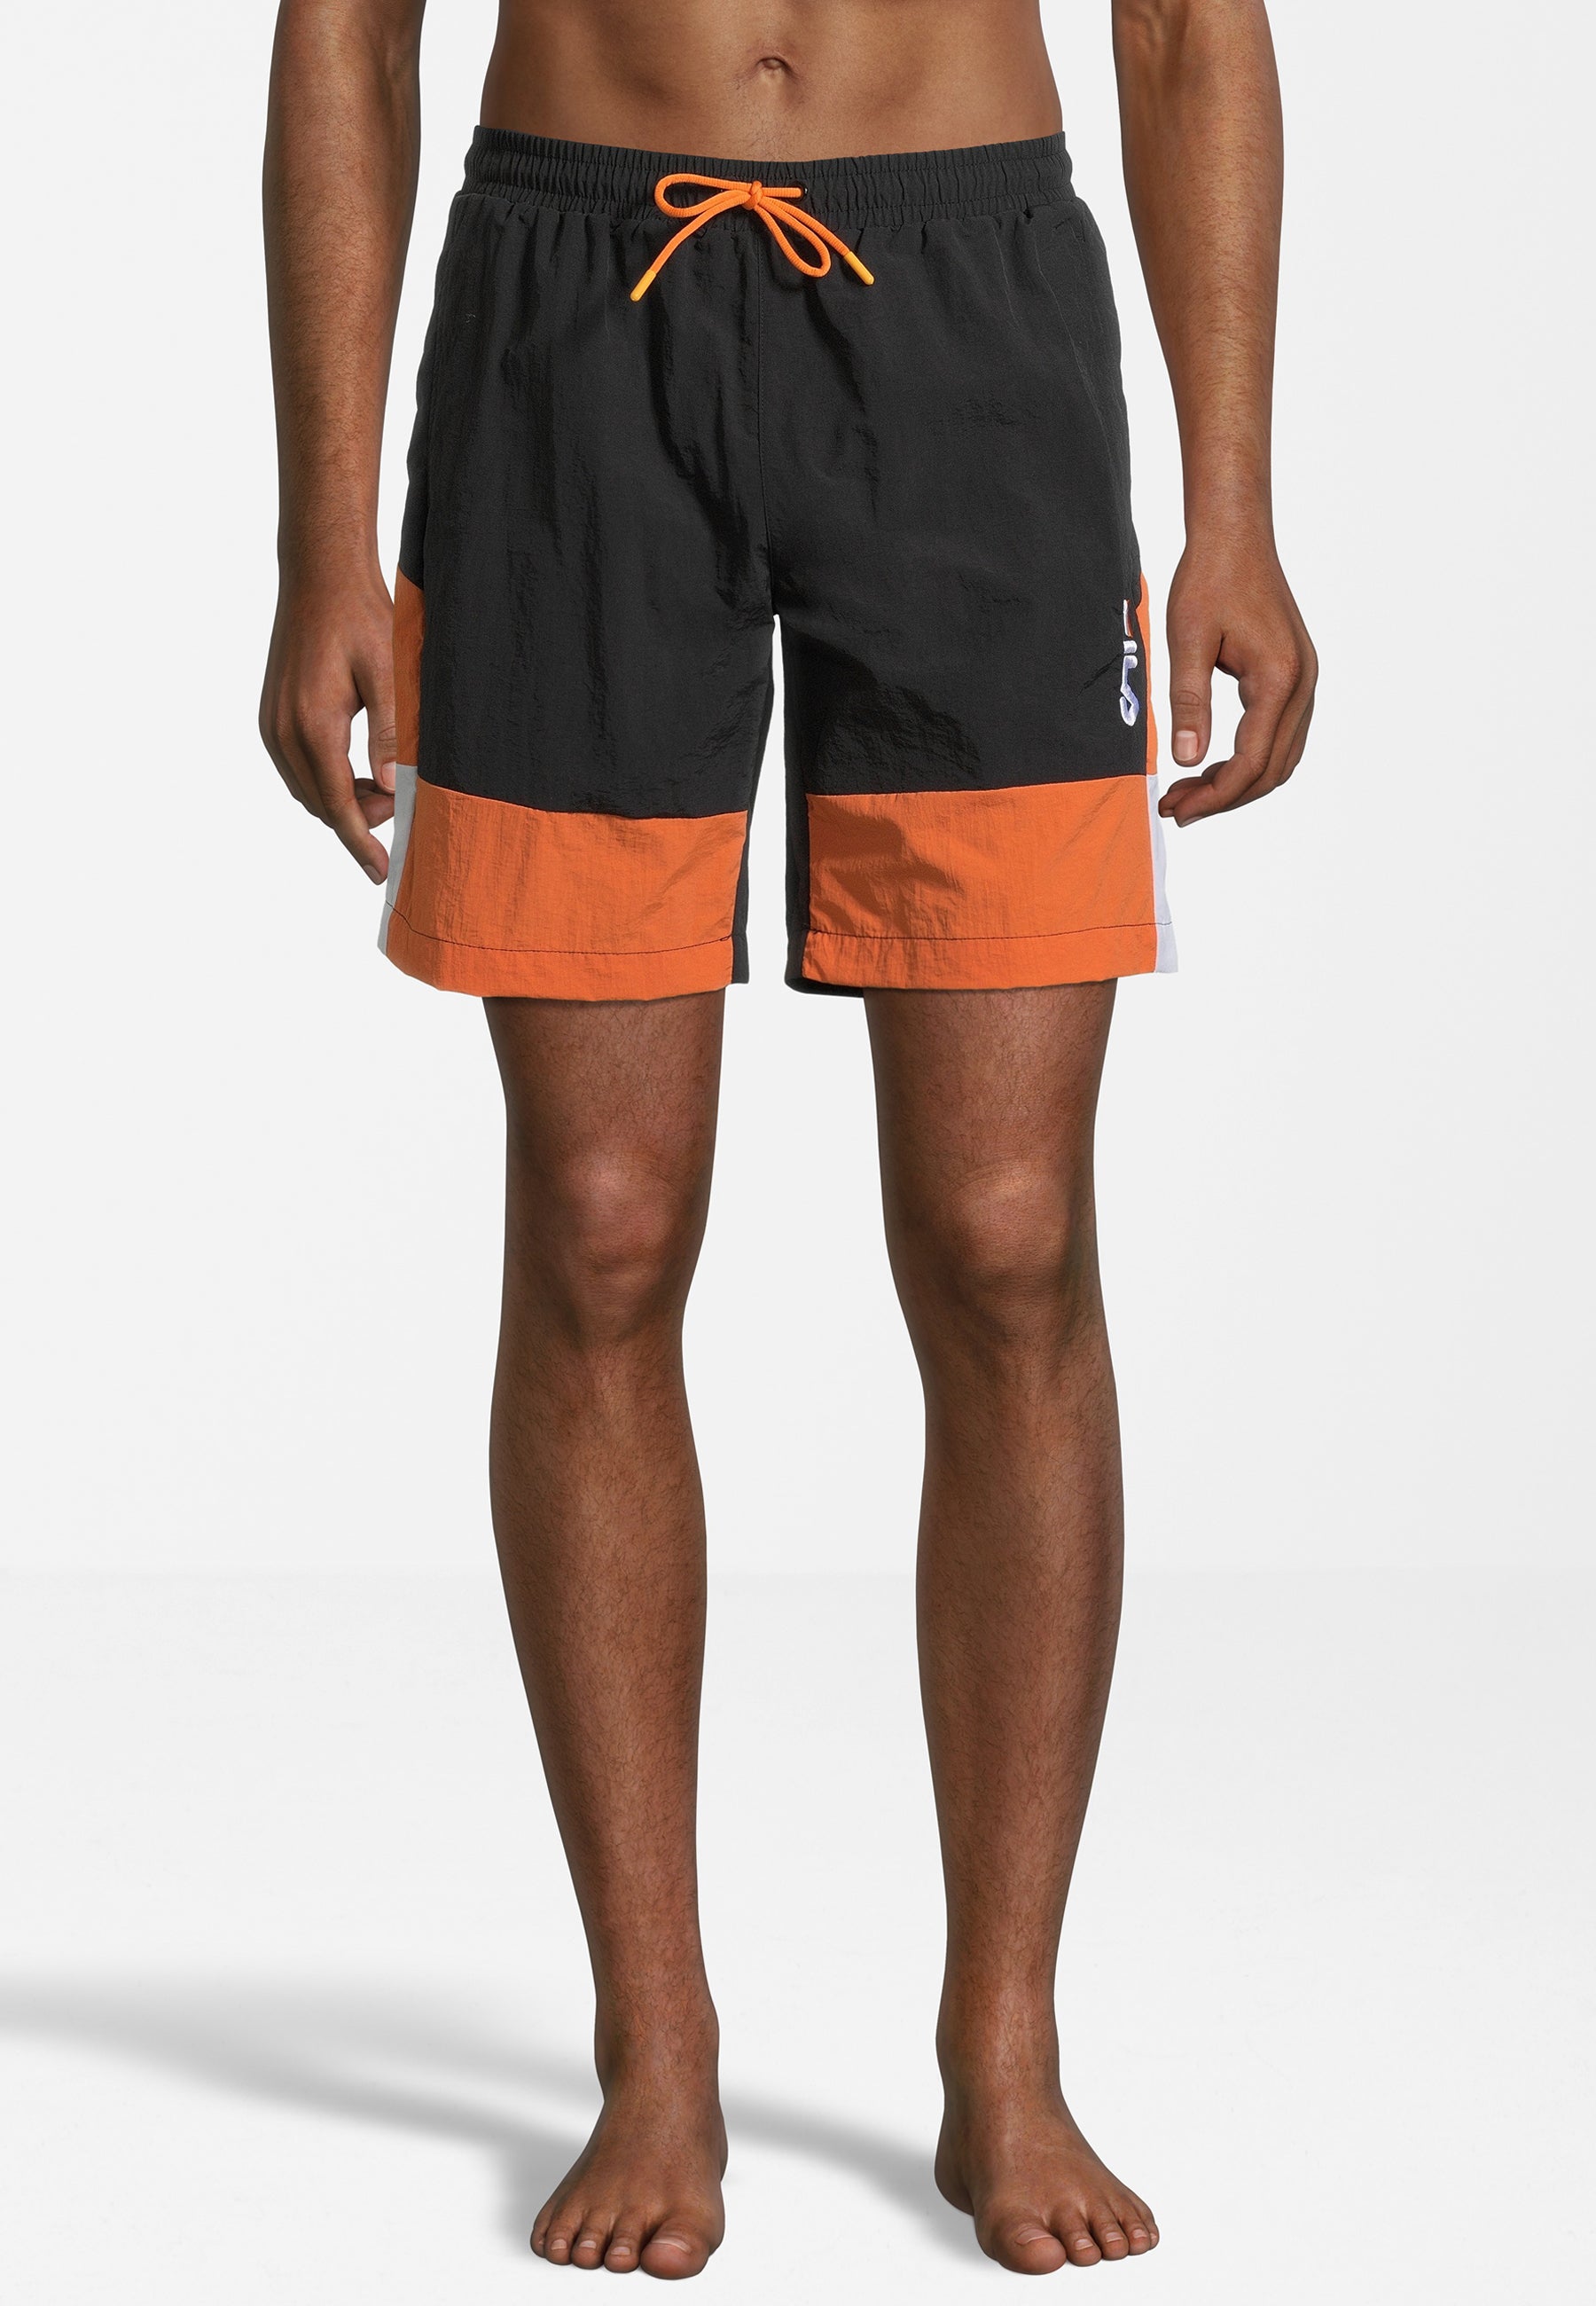 Sciacca Swim Shorts in Black-Celosia Orange-Bright White Badehosen Fila   